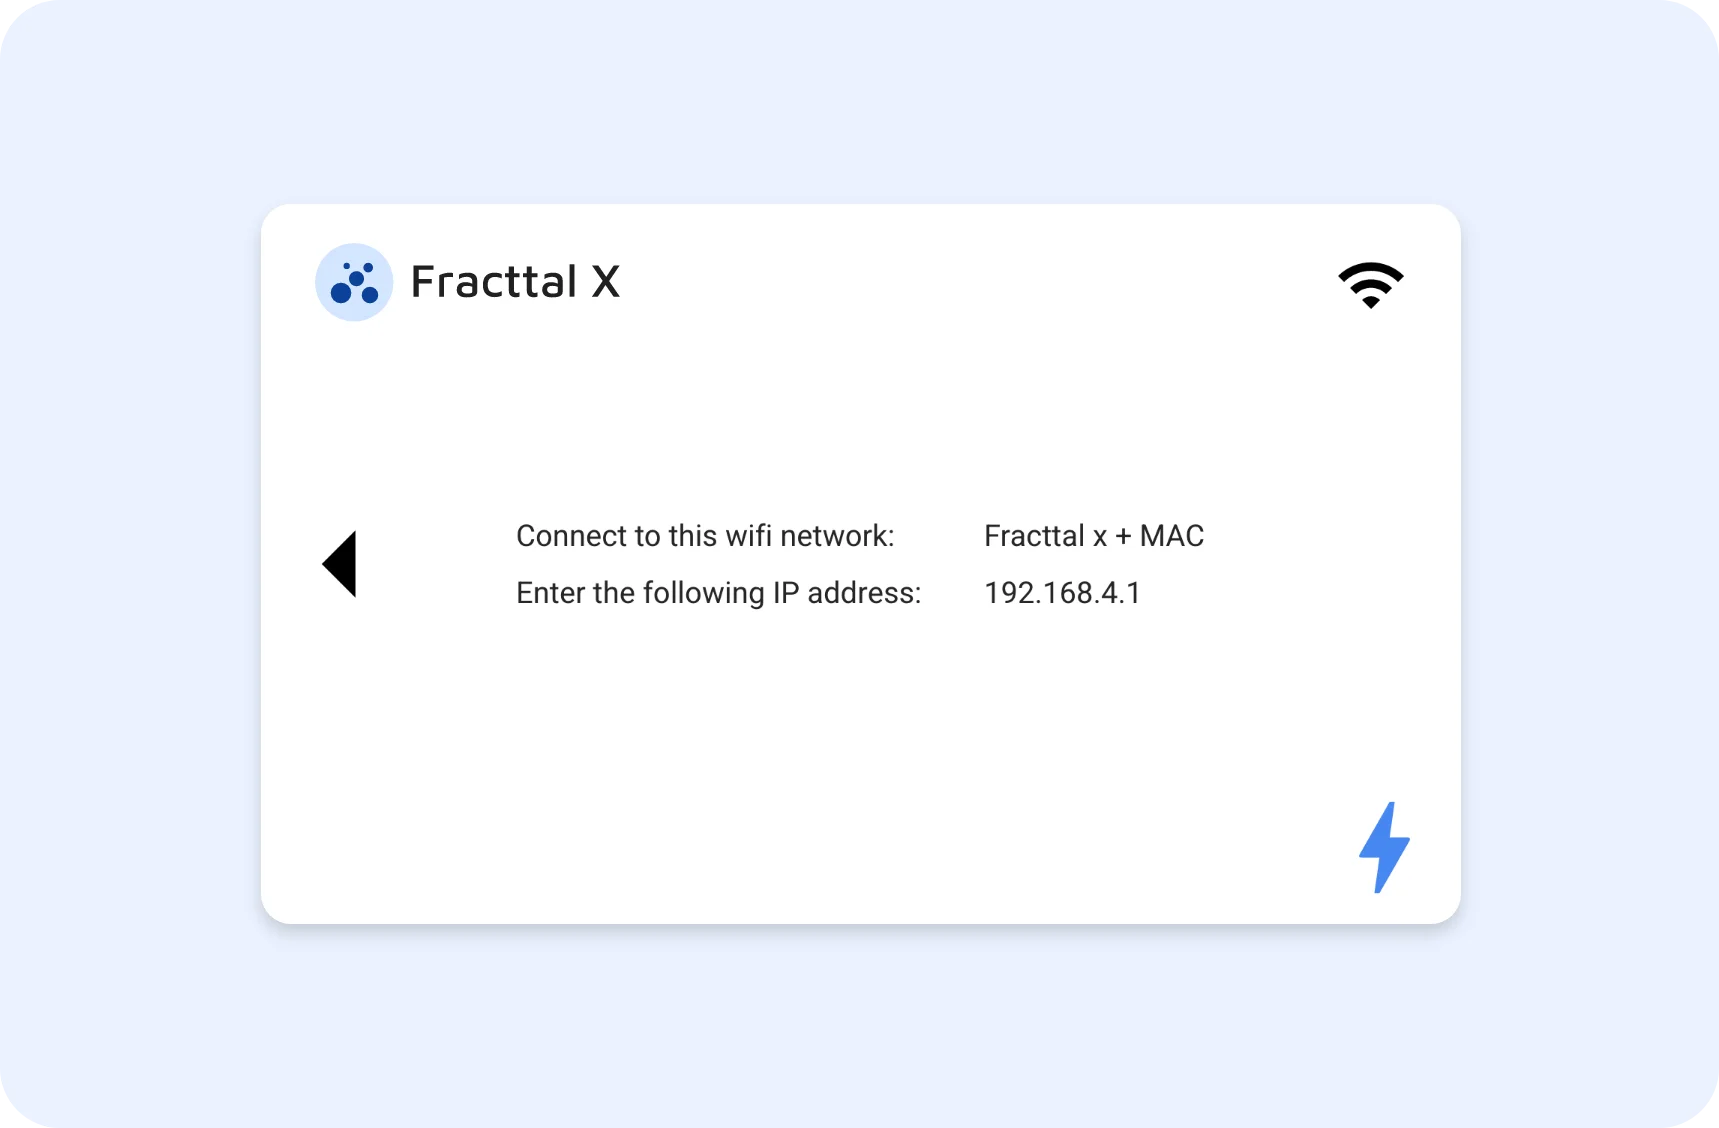 Estado de la conexión WiFi